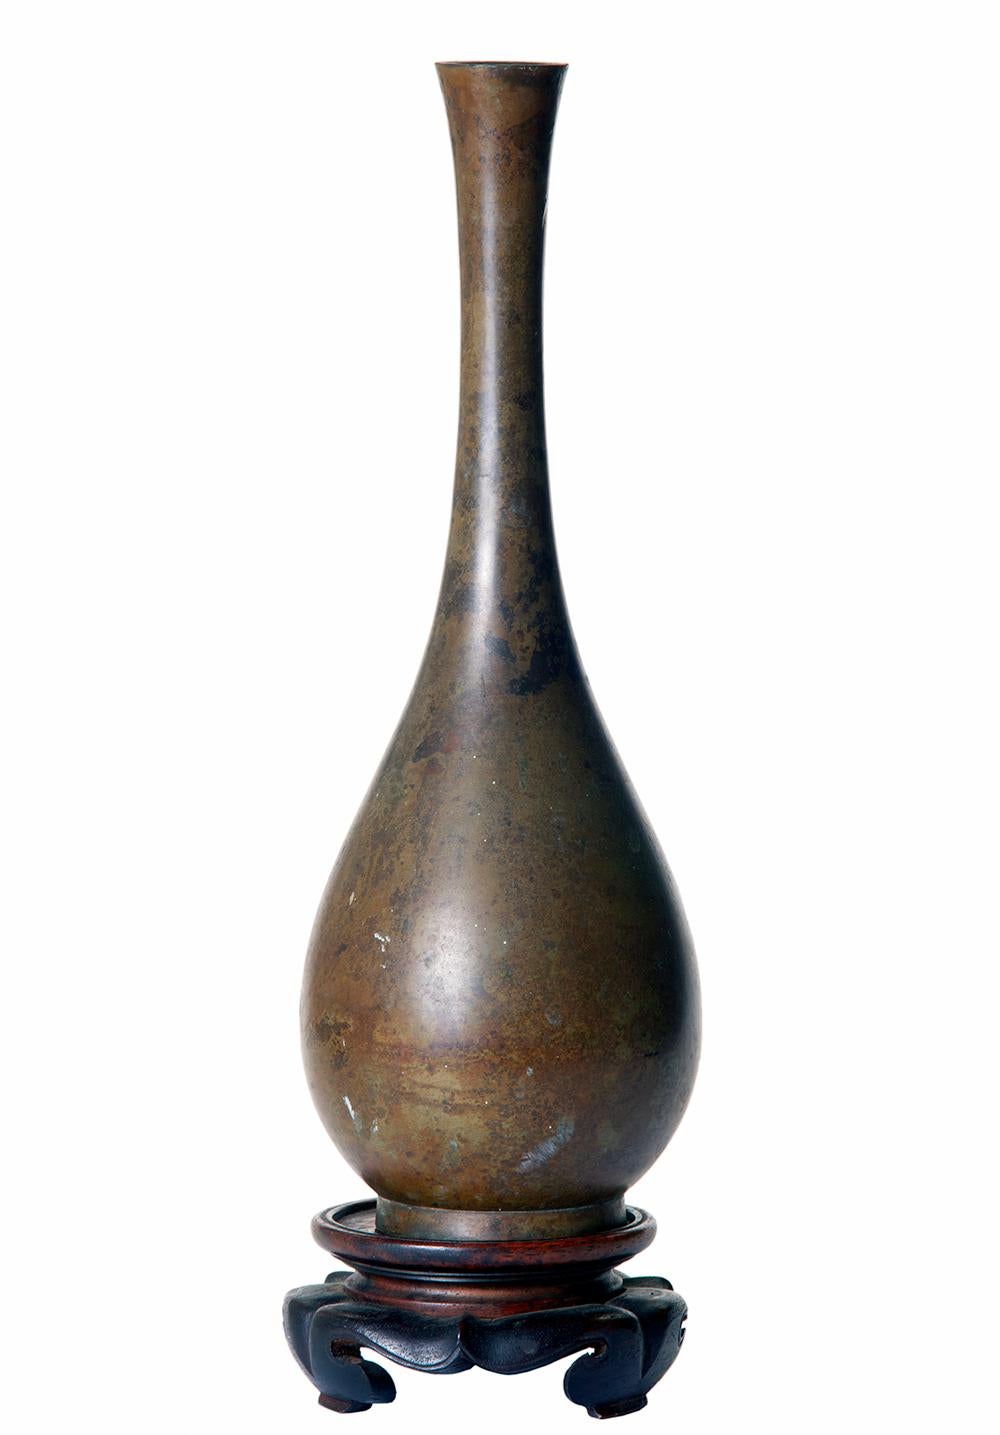 Hohe Knospenvase aus asiatischer Bronze mit glatter, gesprenkelter Hand.
Die schlanke Vase steht auf einem handgeschnitzten Palisanderholzständer.